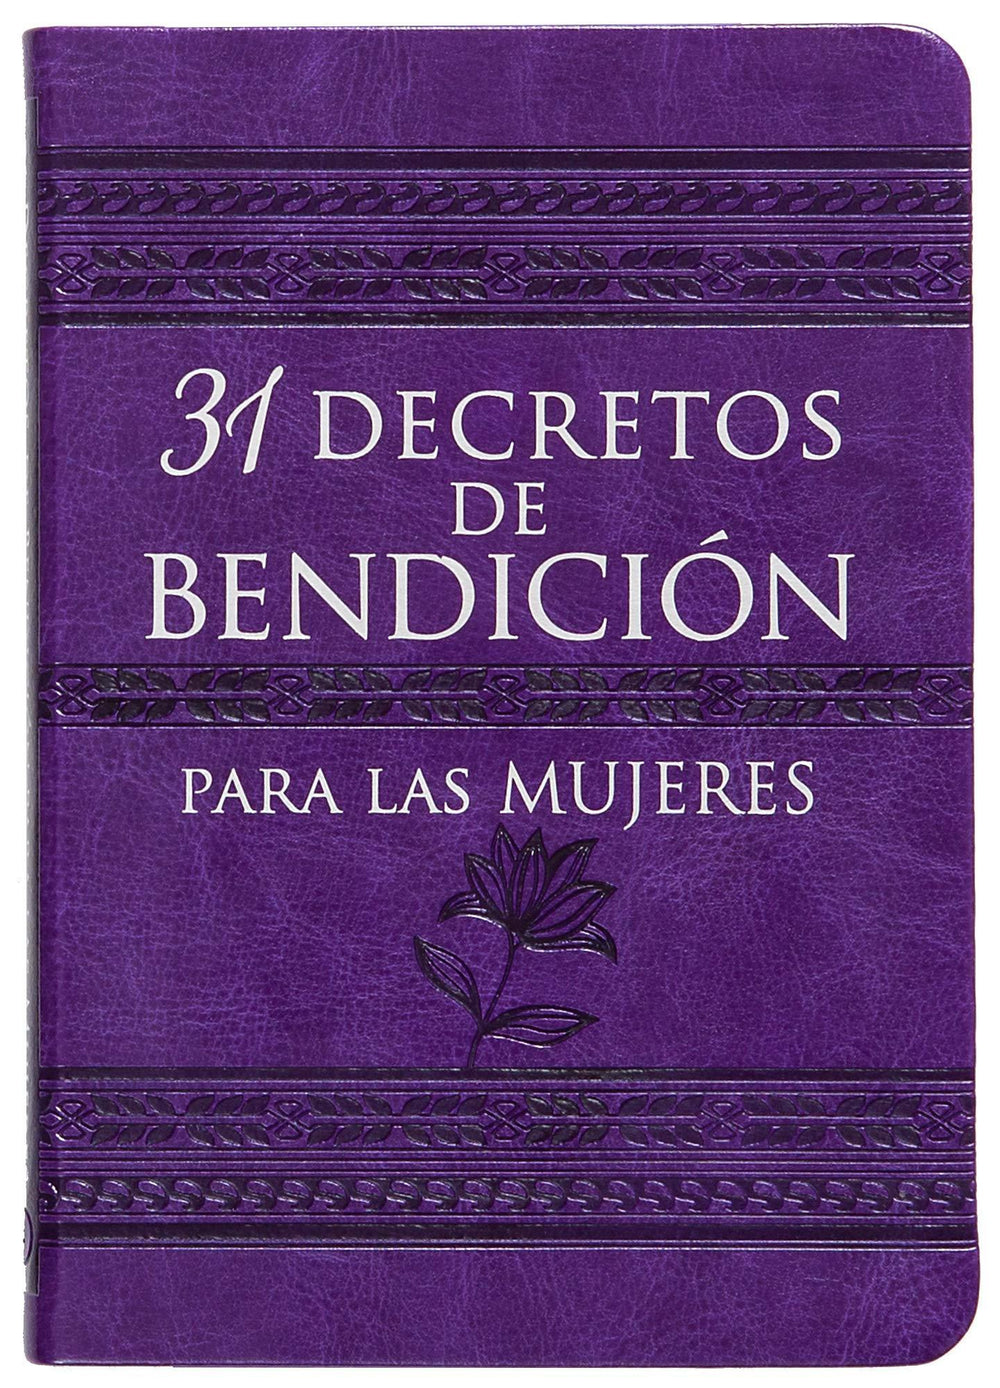 31 decretos de bendición para las mujeres - Pura Vida Books